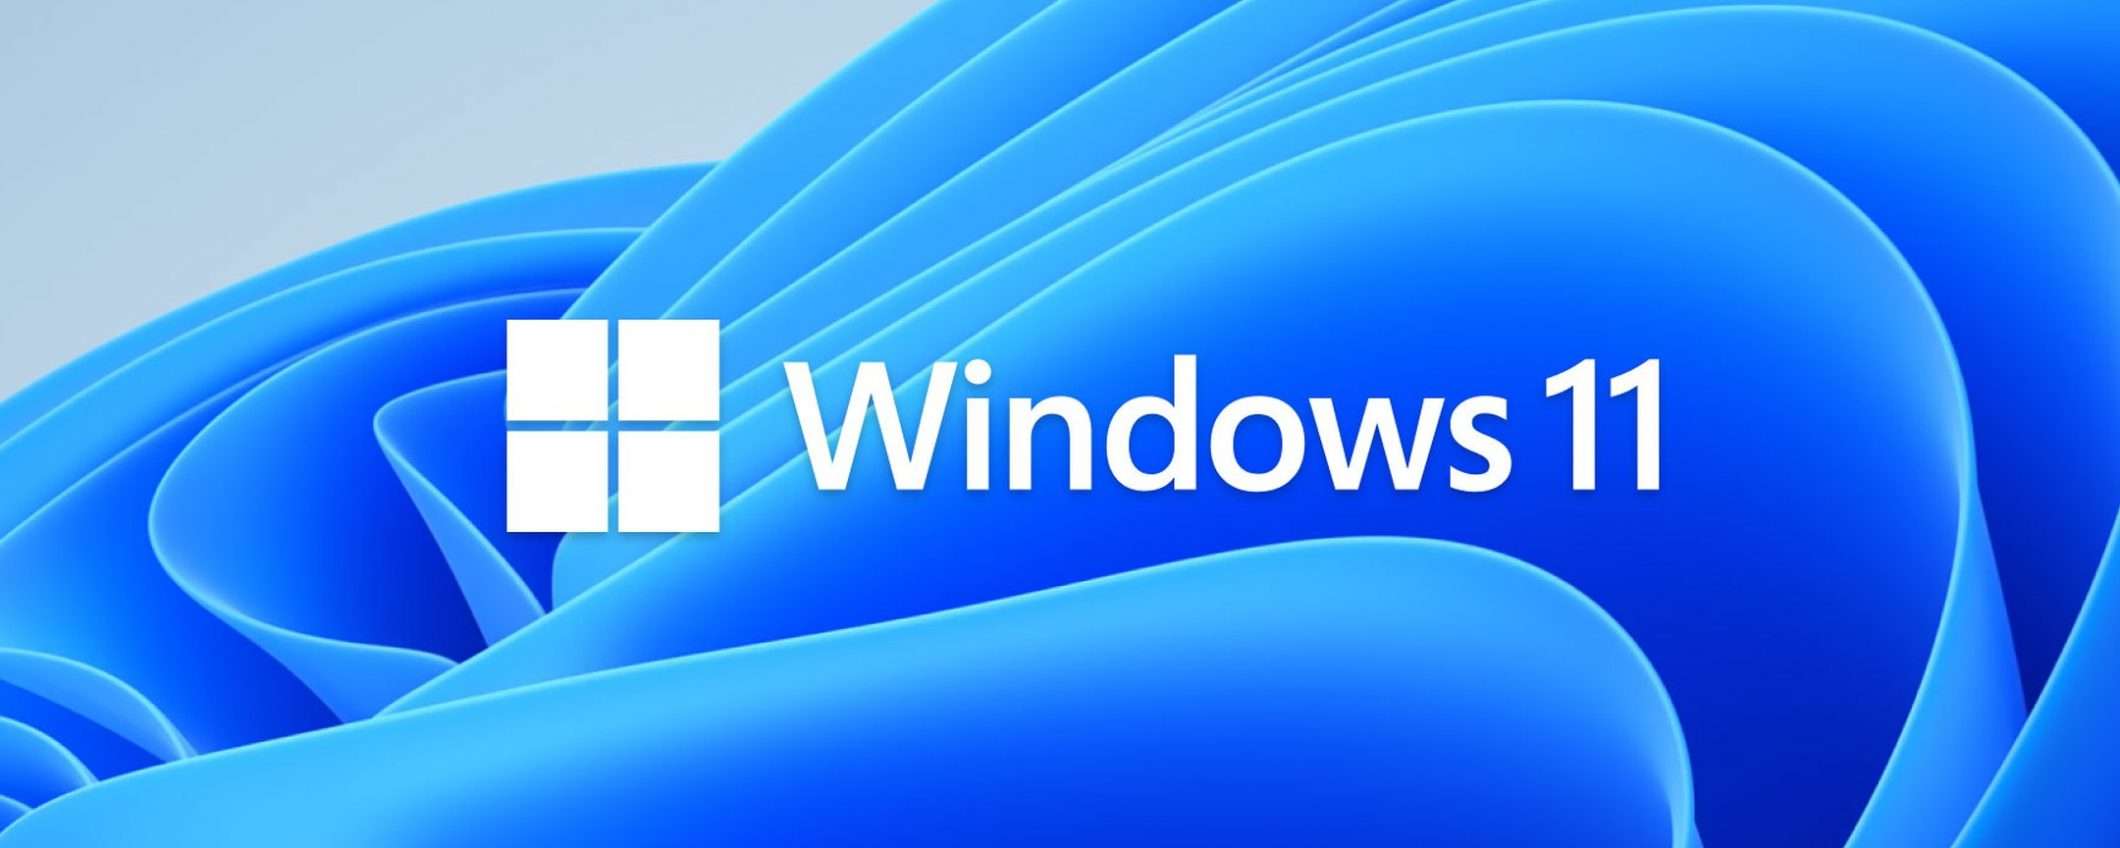 Windows 11: test nel browser senza installazione